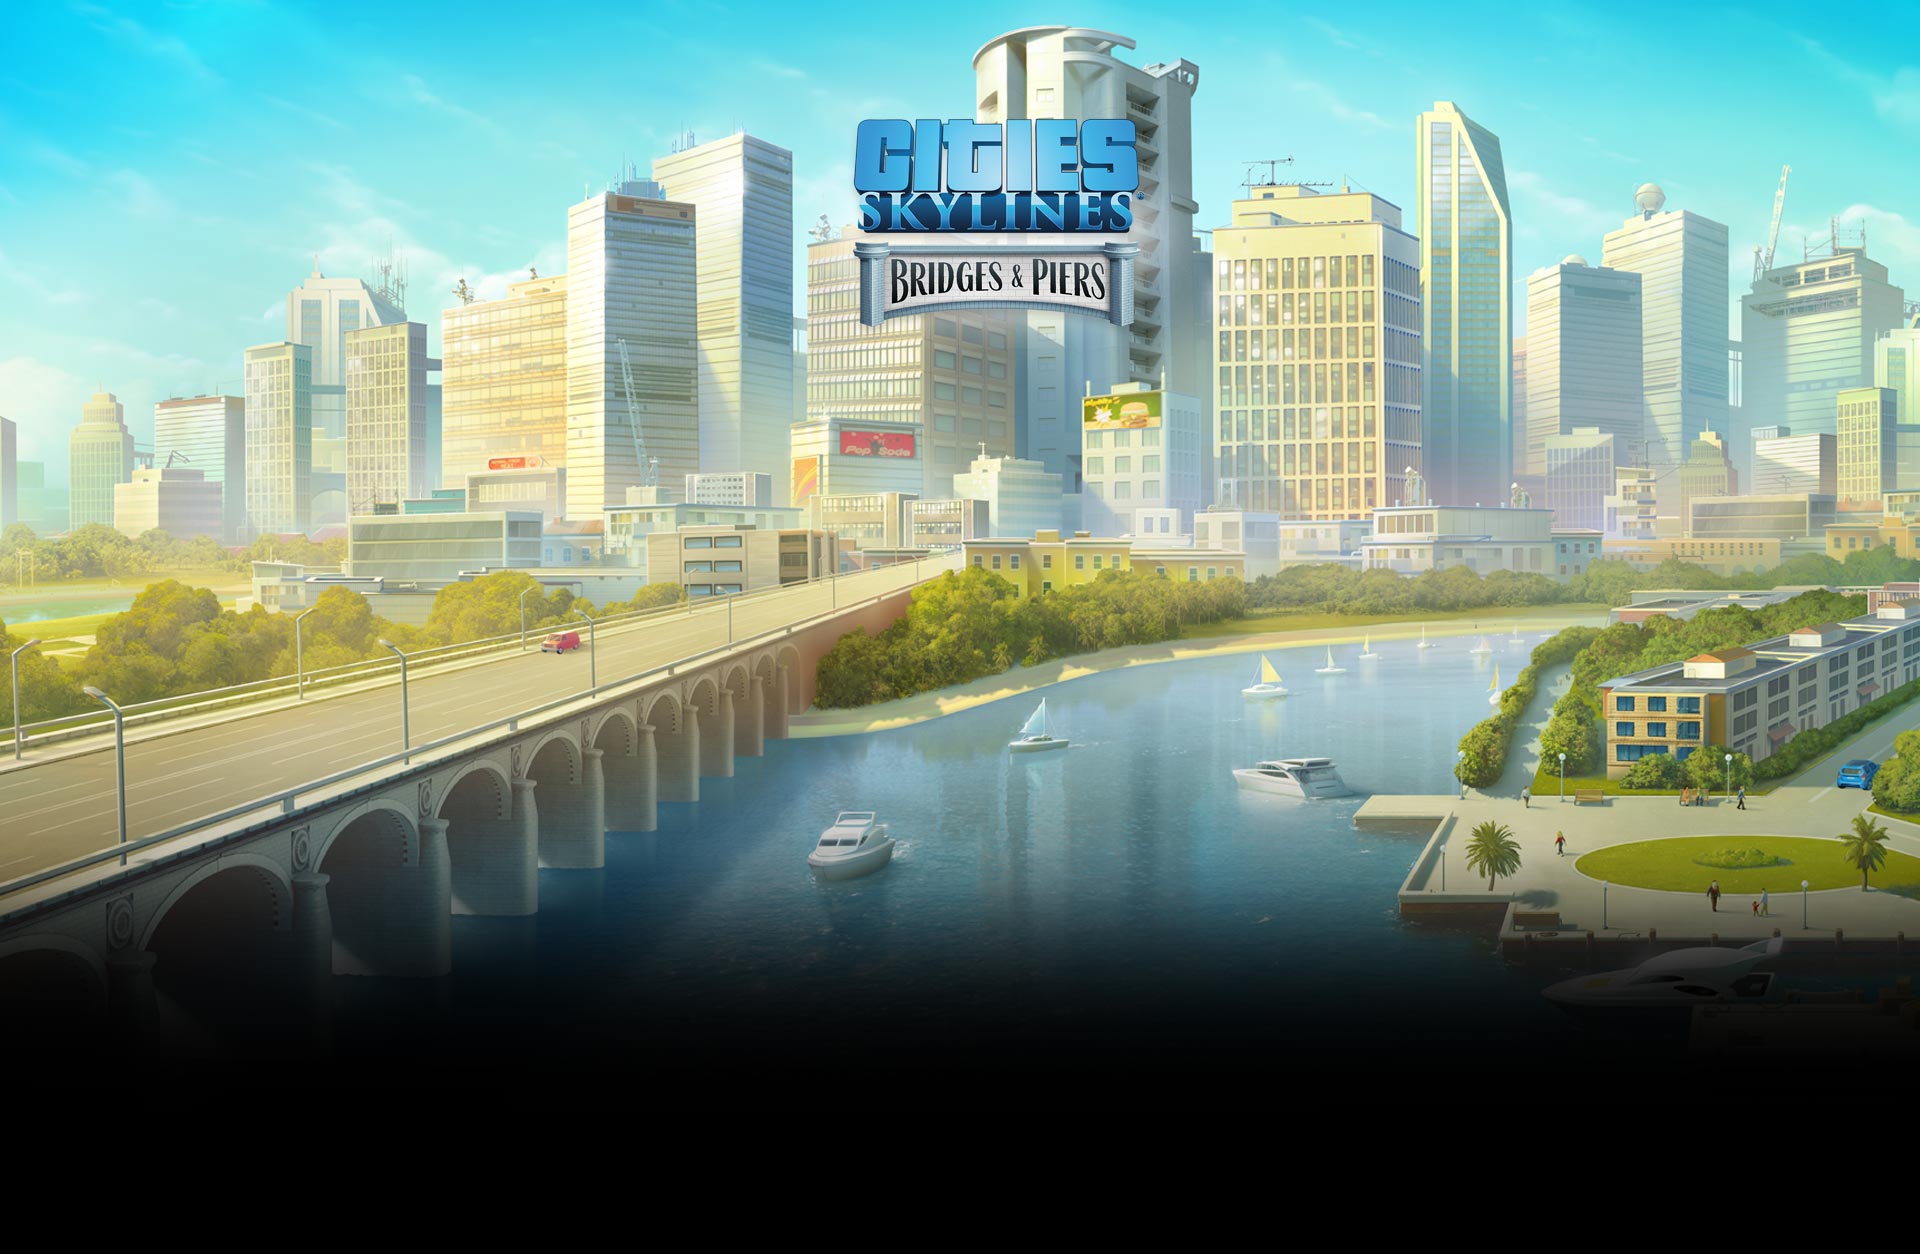 Cities: Skylines - Content Creator Pack Bridges & Piers